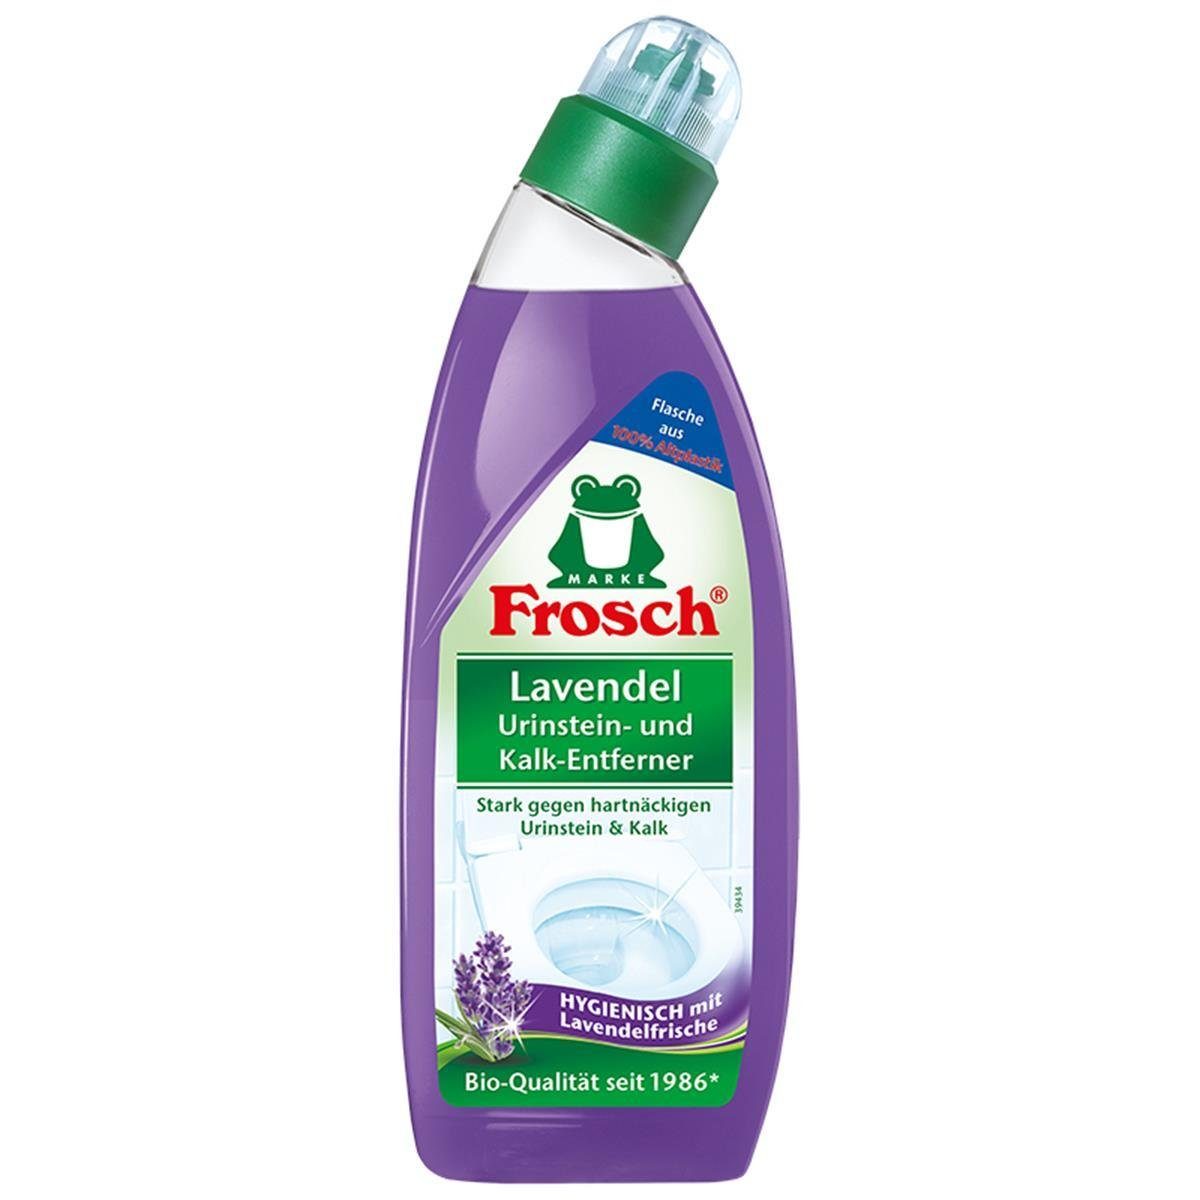 Frosch Urinstein- und WC-Reiniger Lavendel - Kalk-Entferner FROSCH Hygienisch ml 750 mit